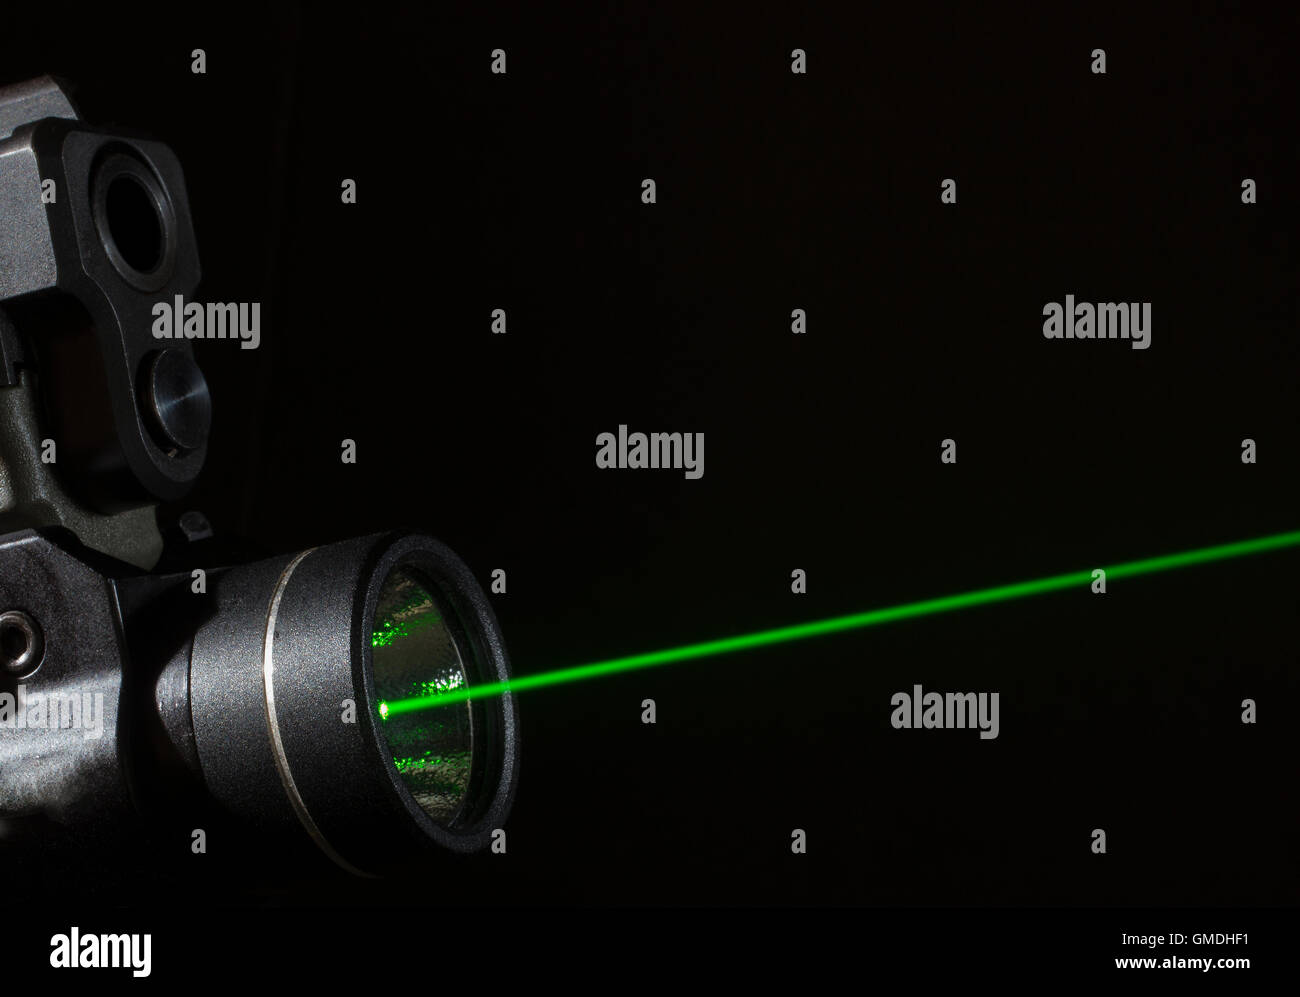 Grüner Laser, der auf dem Boden einer Handfeuerwaffe montiert ist Stockfoto